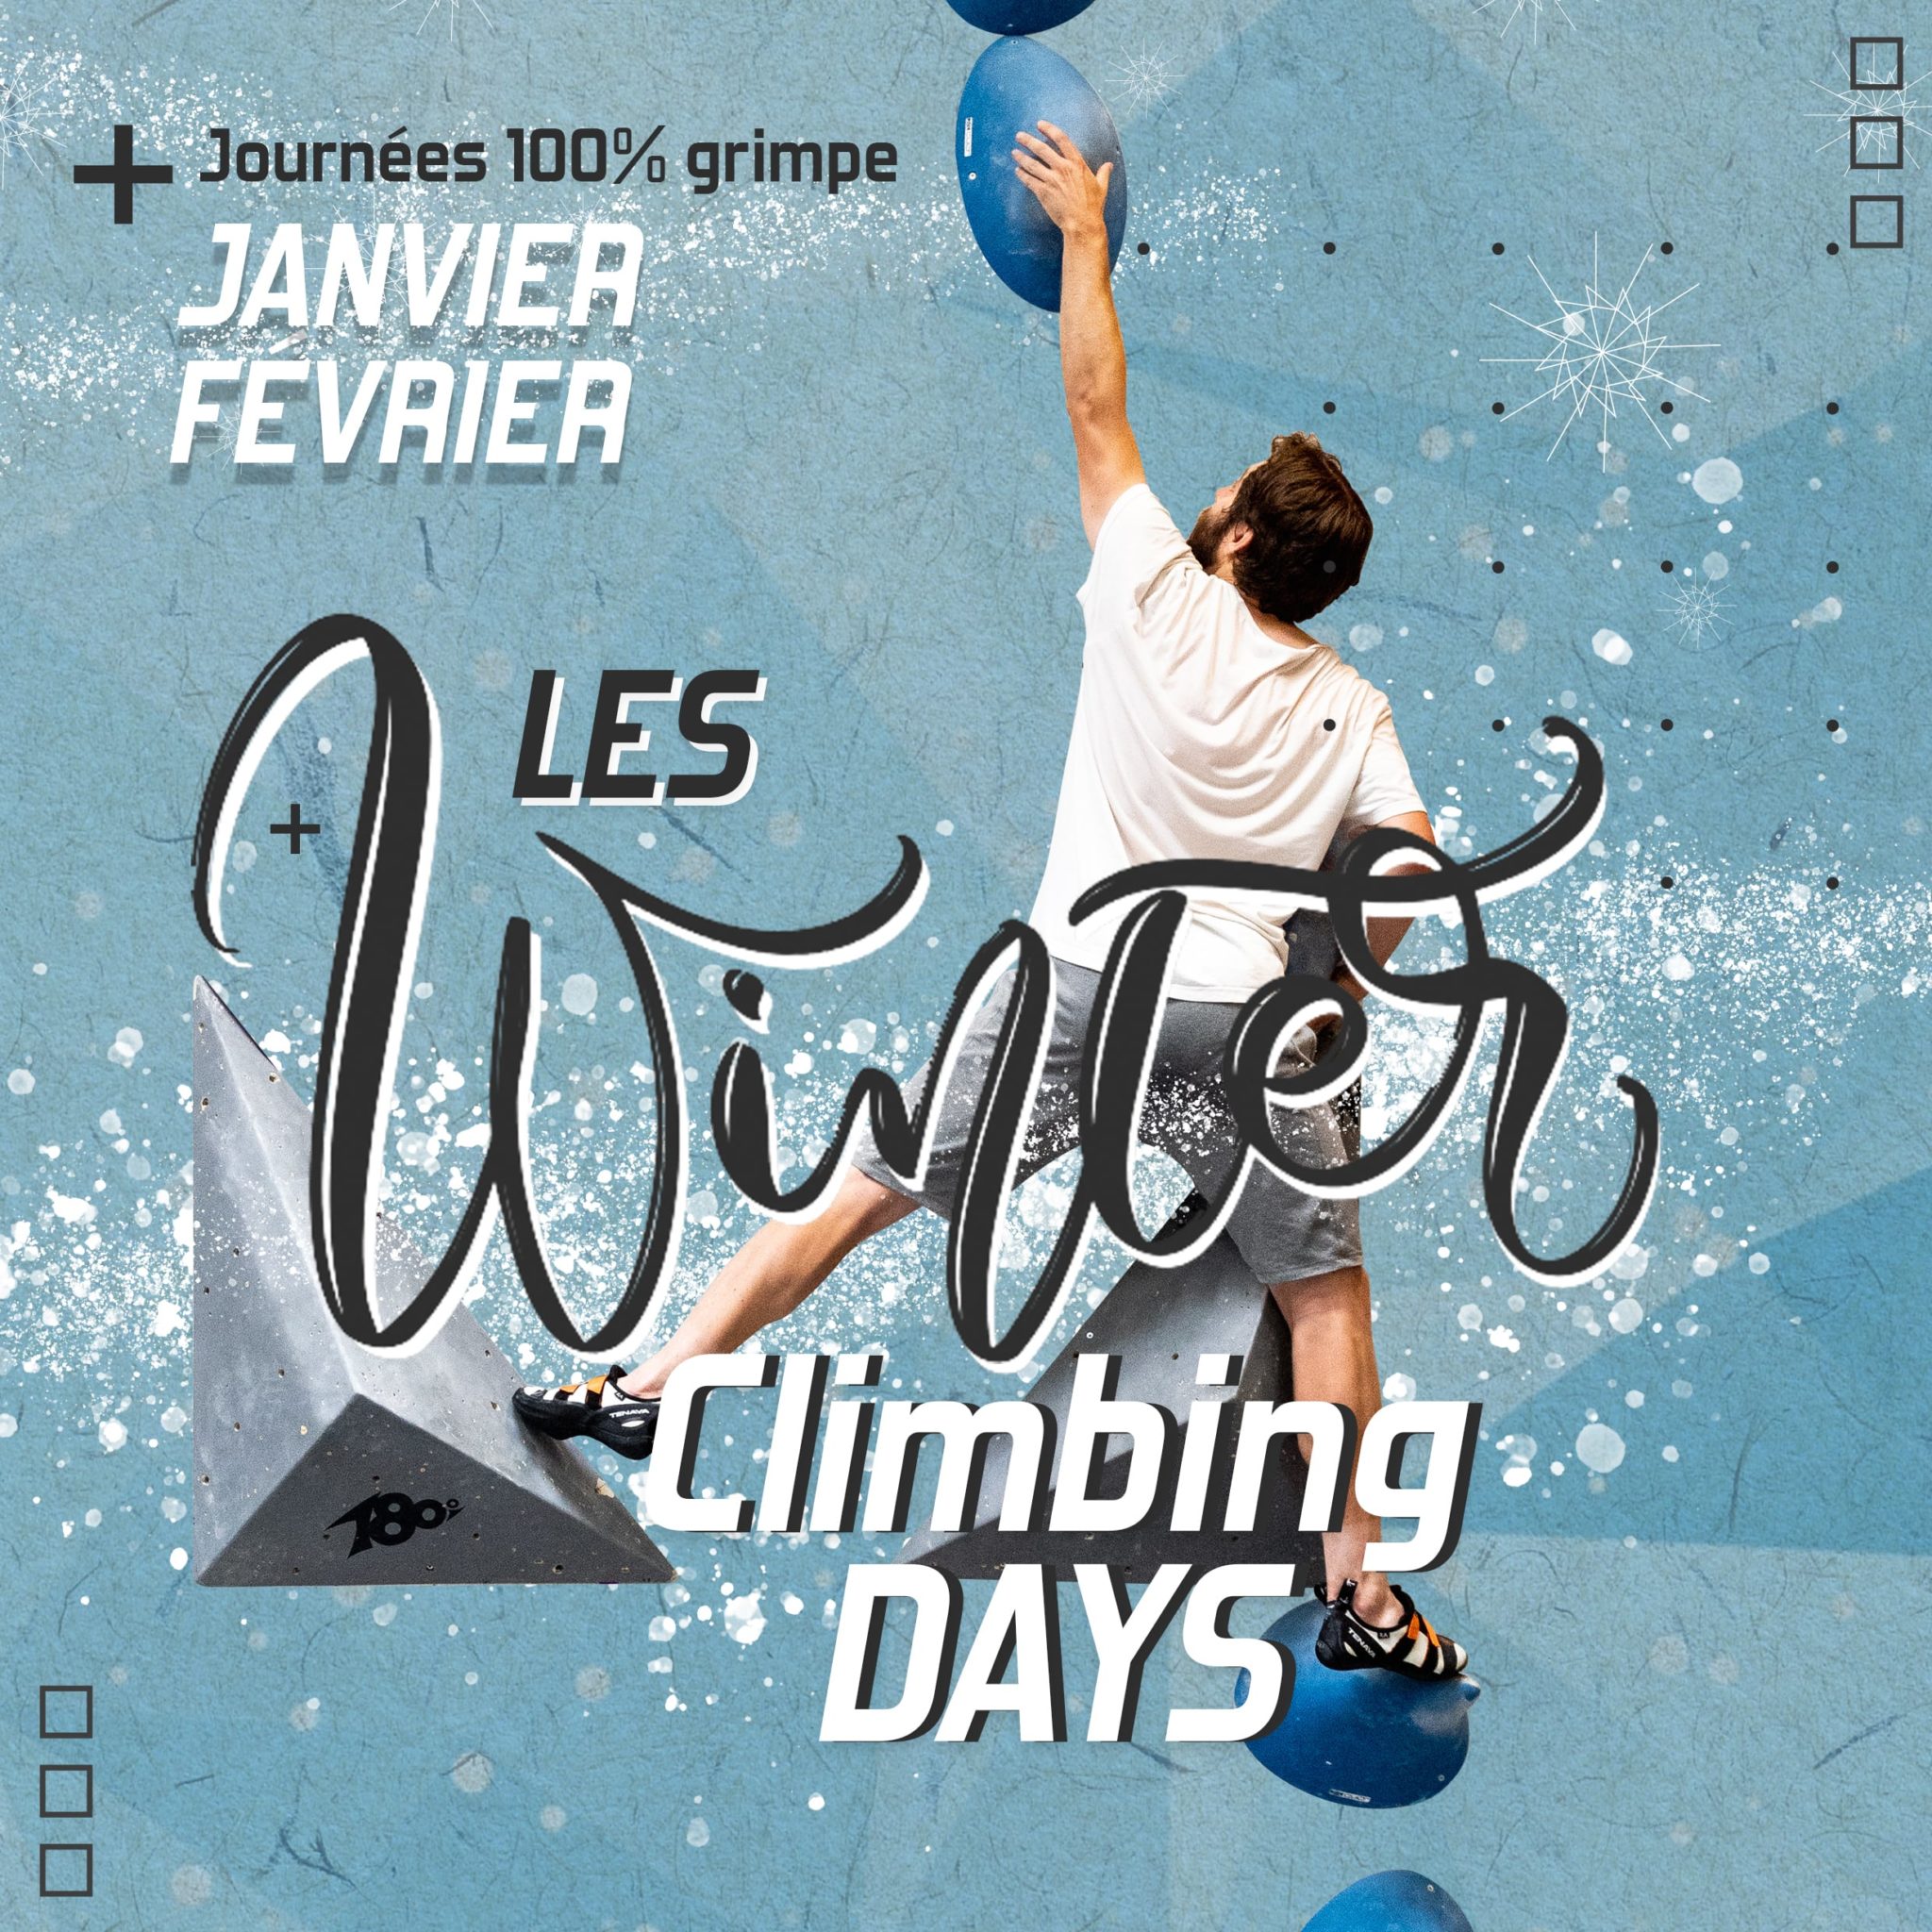 Winter Climbing Days à Vertical'Art France, journée 100% grimpe, entrée 5€